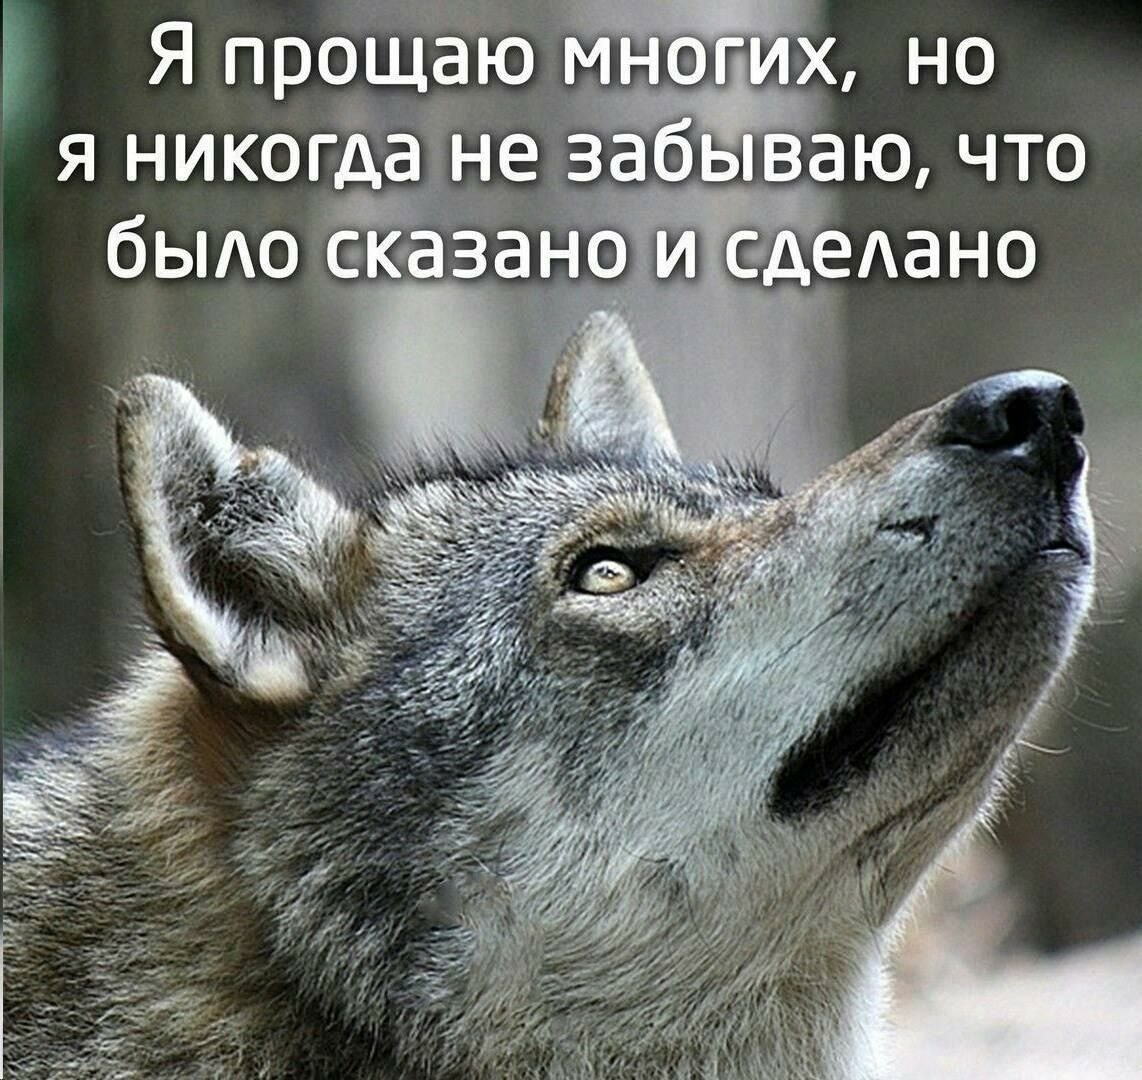 Волк Одиночка Прикол